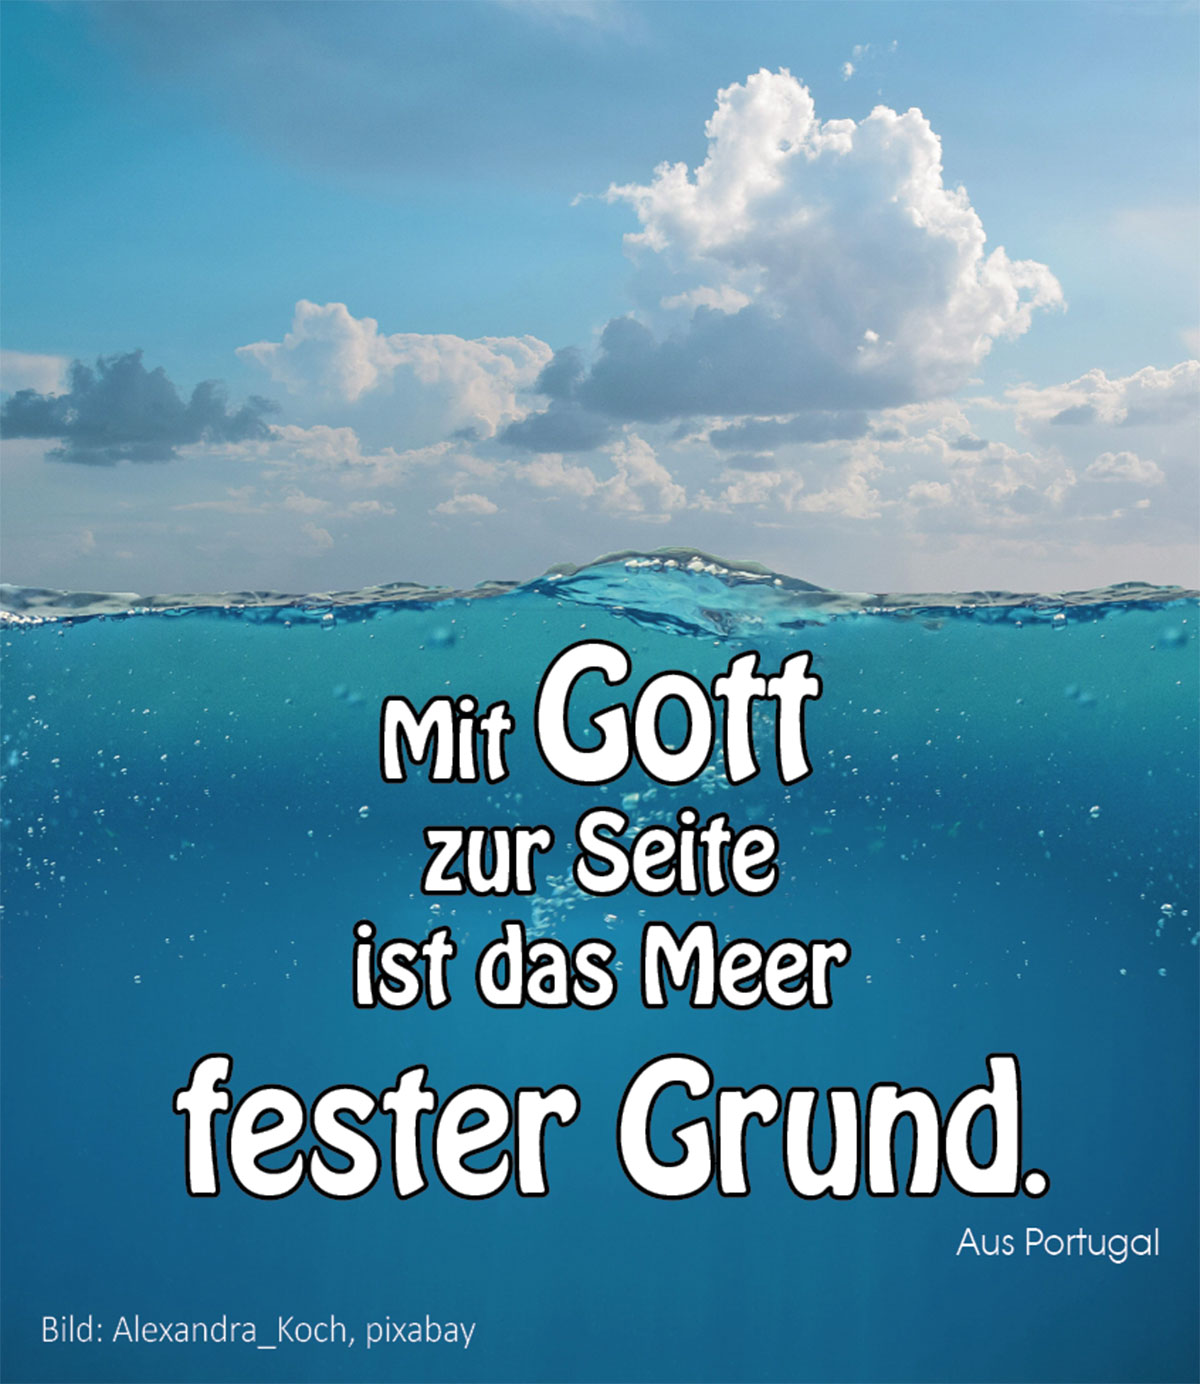 Fester Grund (Foto Meer: Alexandra_Koch, pixabay)